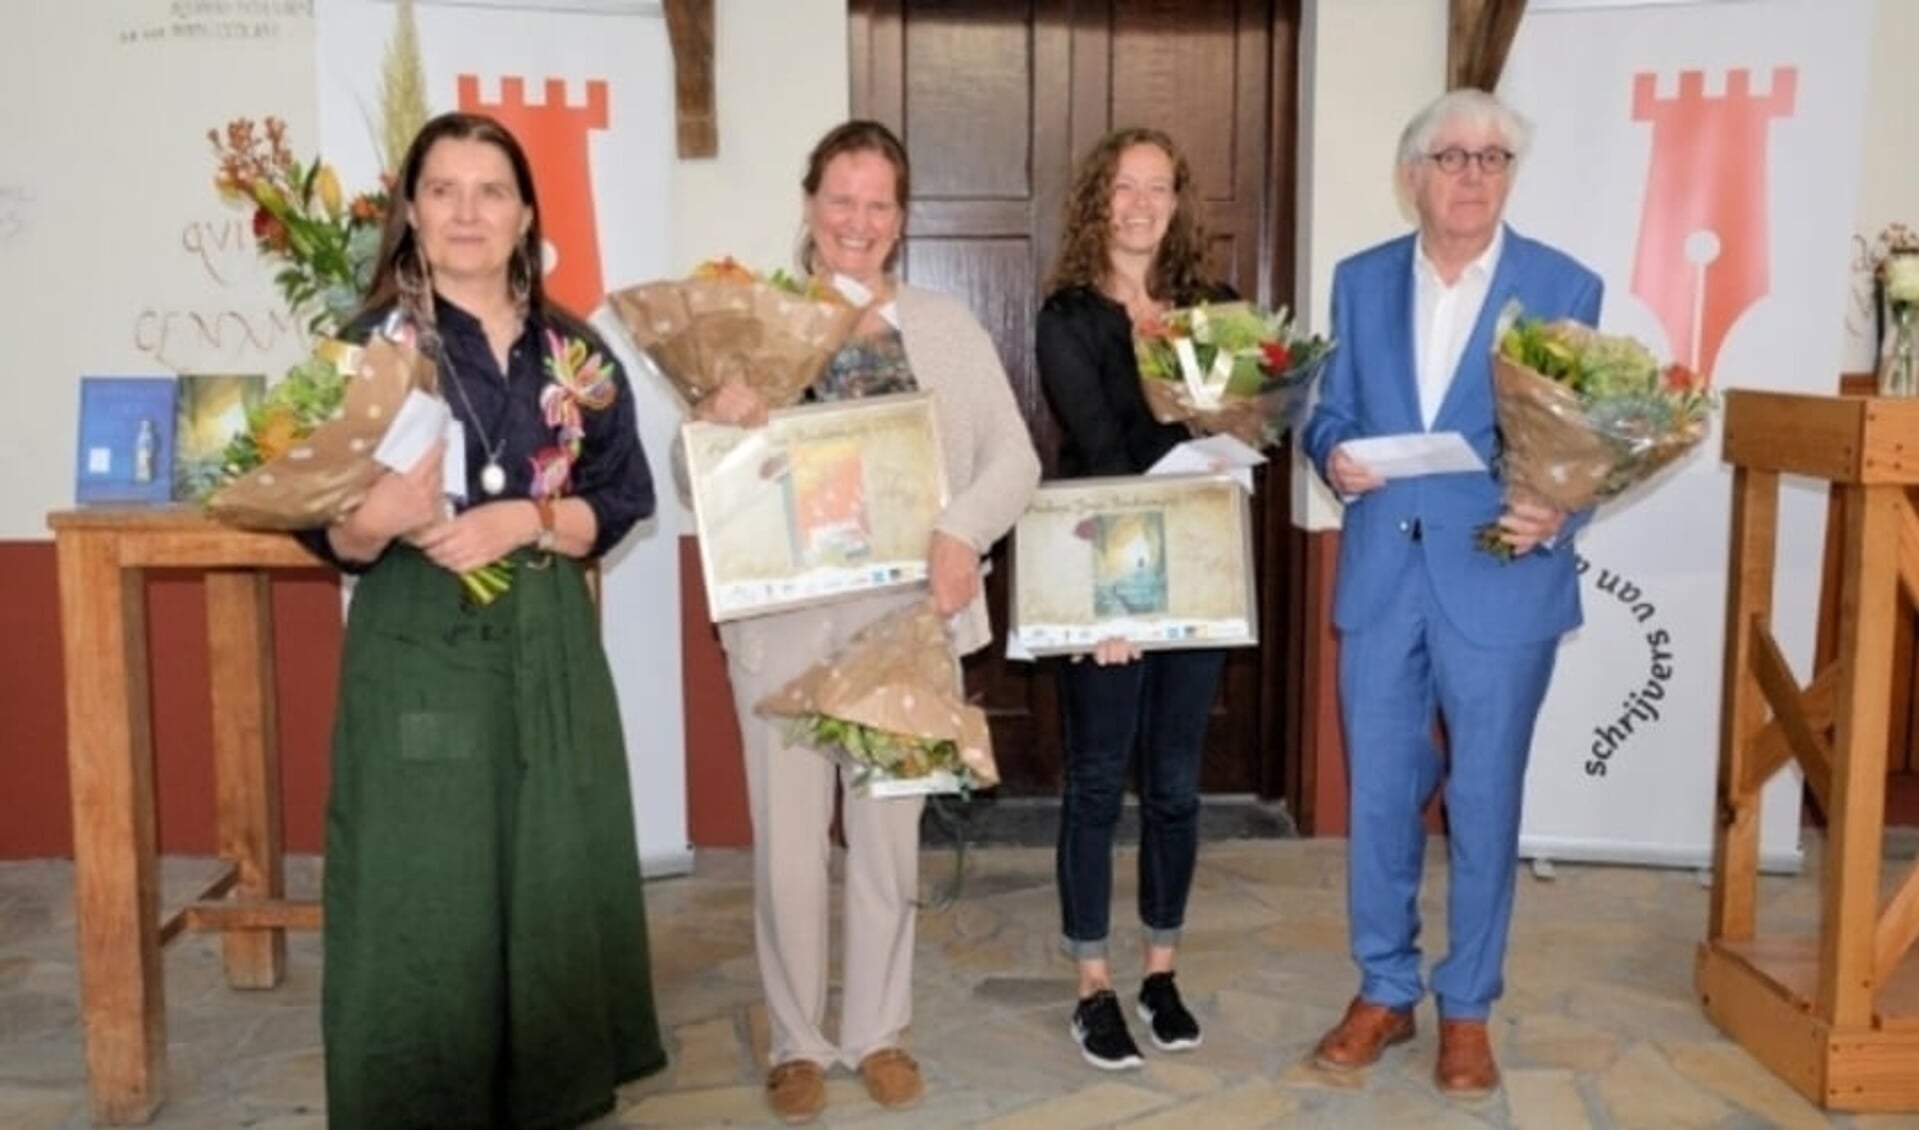 Foto: Uitreiking Archeon Thea Beckmanprijs 2020 met onder andere winnaar Martine Letterie.